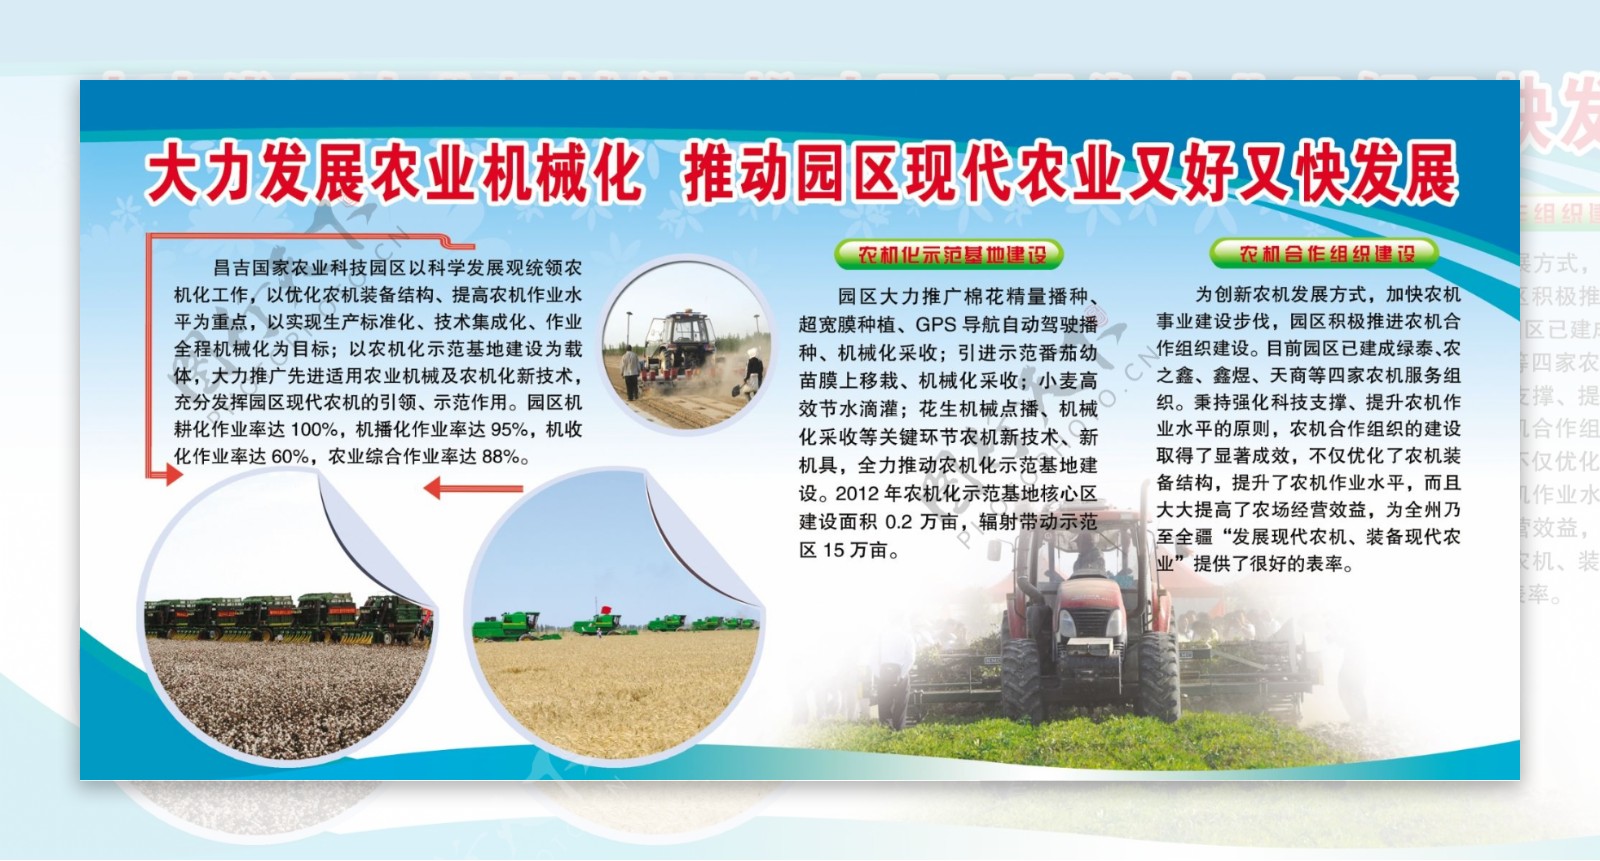 机械化农业发展宣传图片